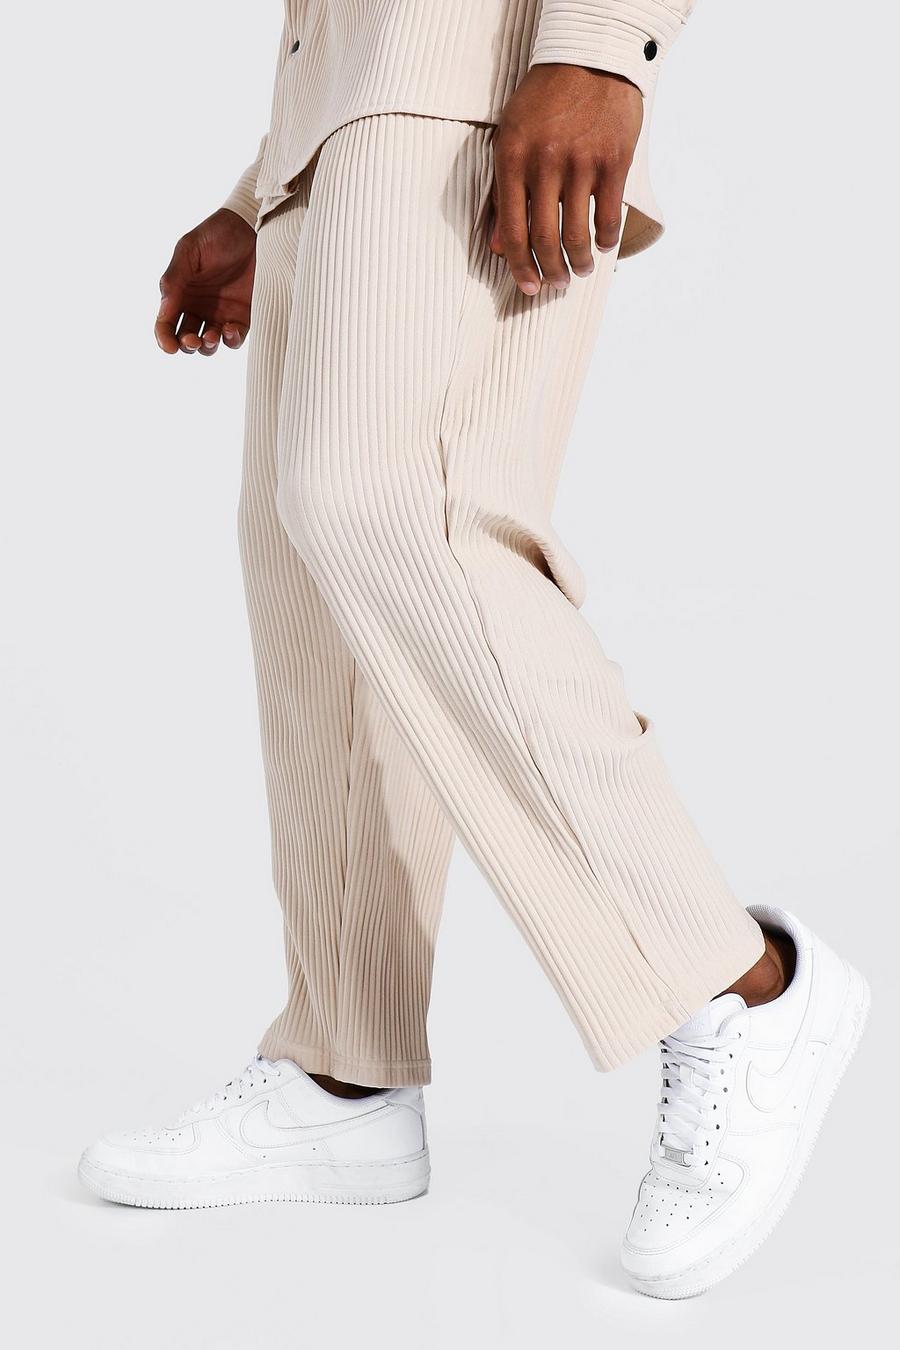 pantalon jogger en toile beige pantalons de costume homme